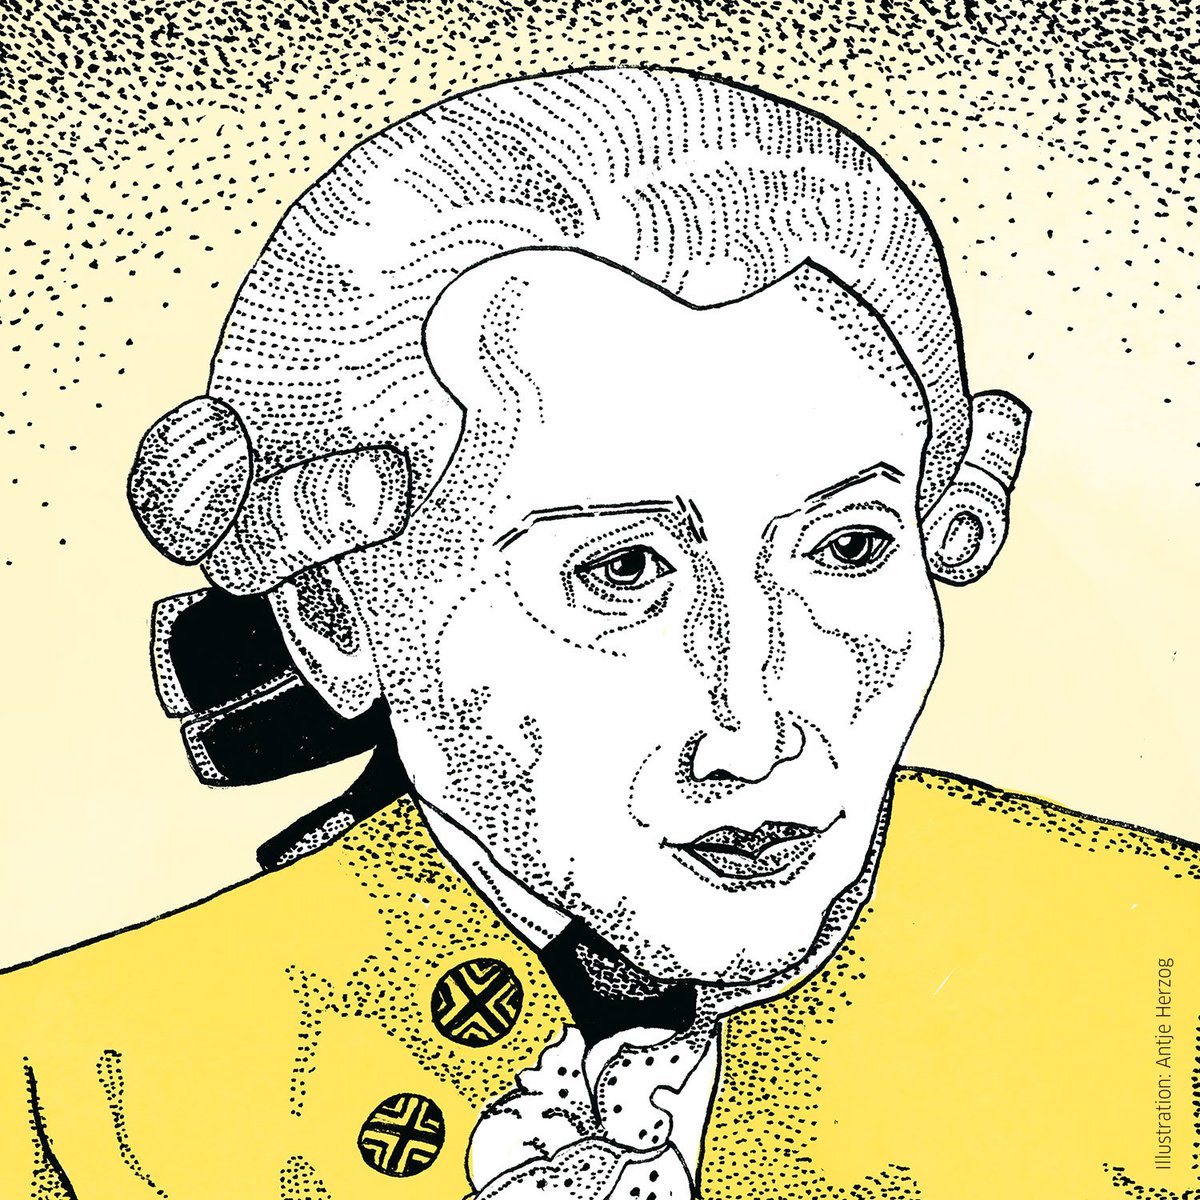 Heute vor 300 Jahren wurde Immanuel Kant geboren. Seine Maxime, uns unseres eigenen Verstandes zu bedienen, erscheint heute vordringlicher denn je. Wo können wir von ihm lernen? Wo sollten wir ihn kritisch diskutieren? Das und mehr im Kant-Special: goethe.de/kant